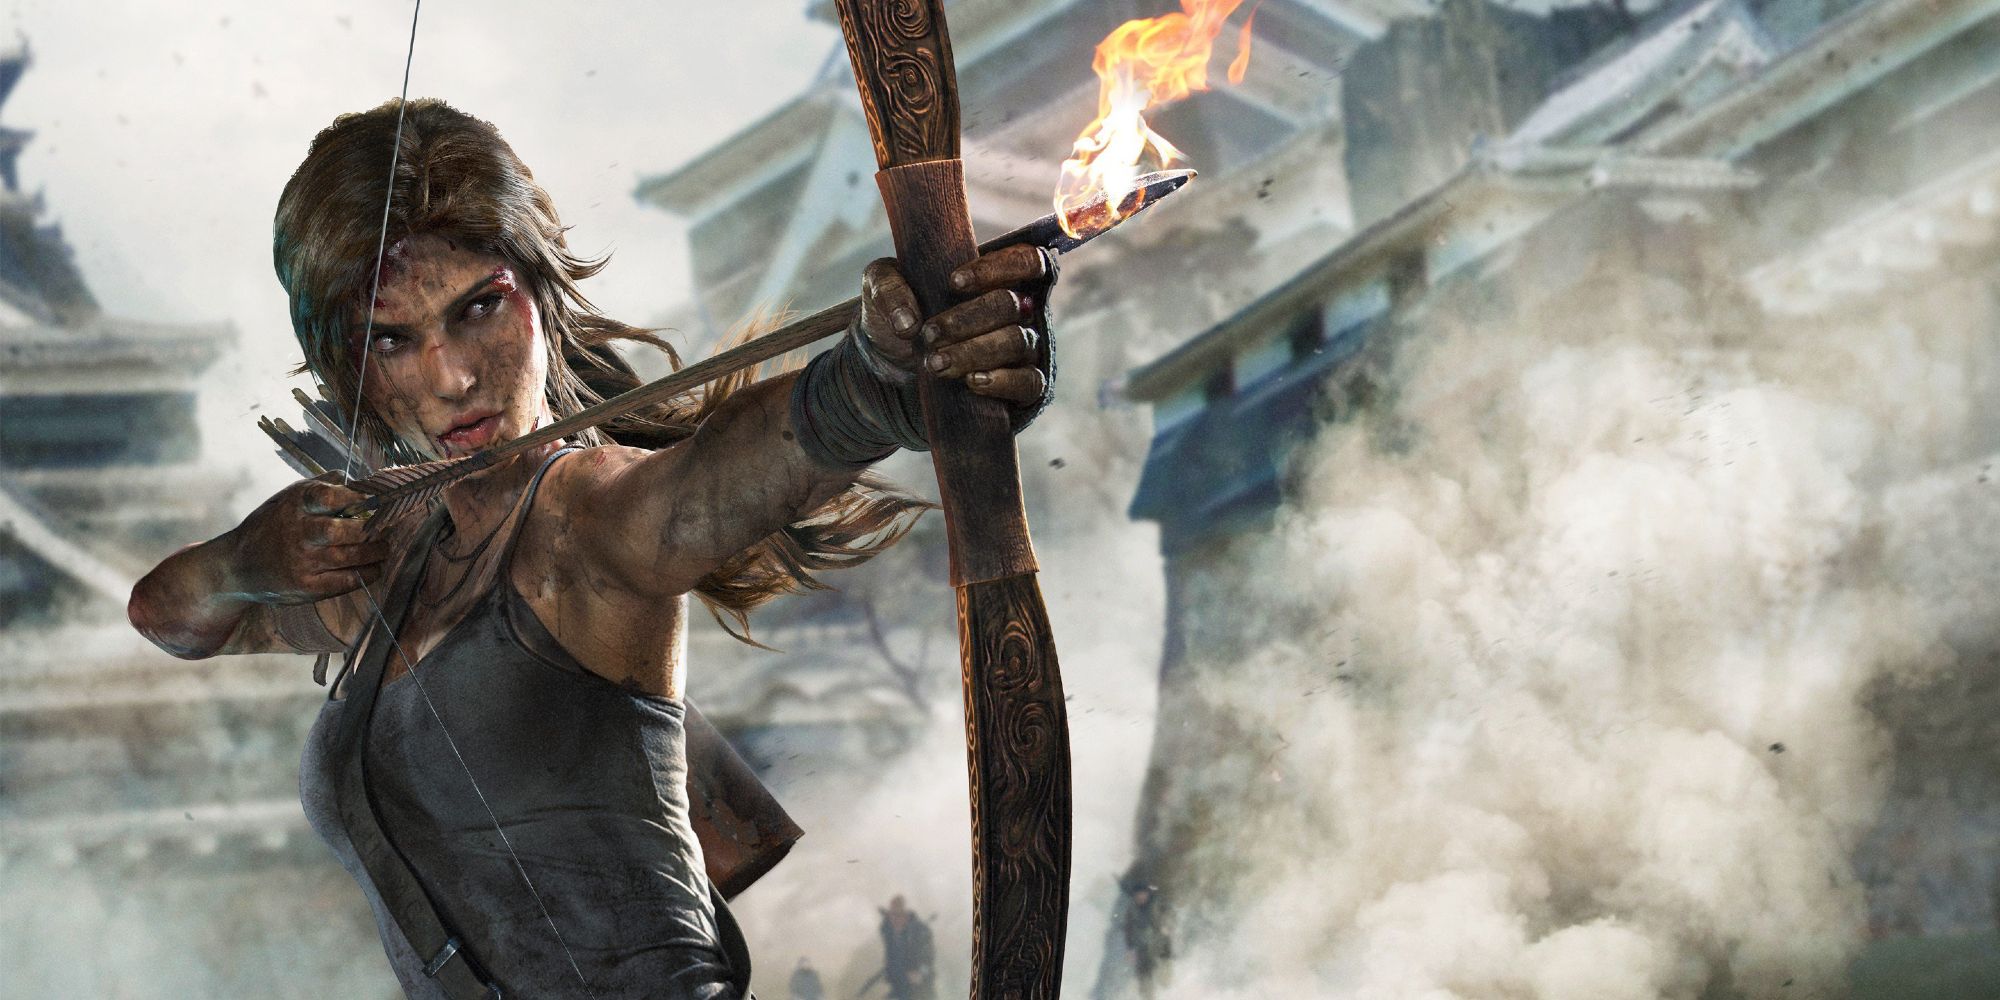 Lara Croft aiming a bow and arrow.